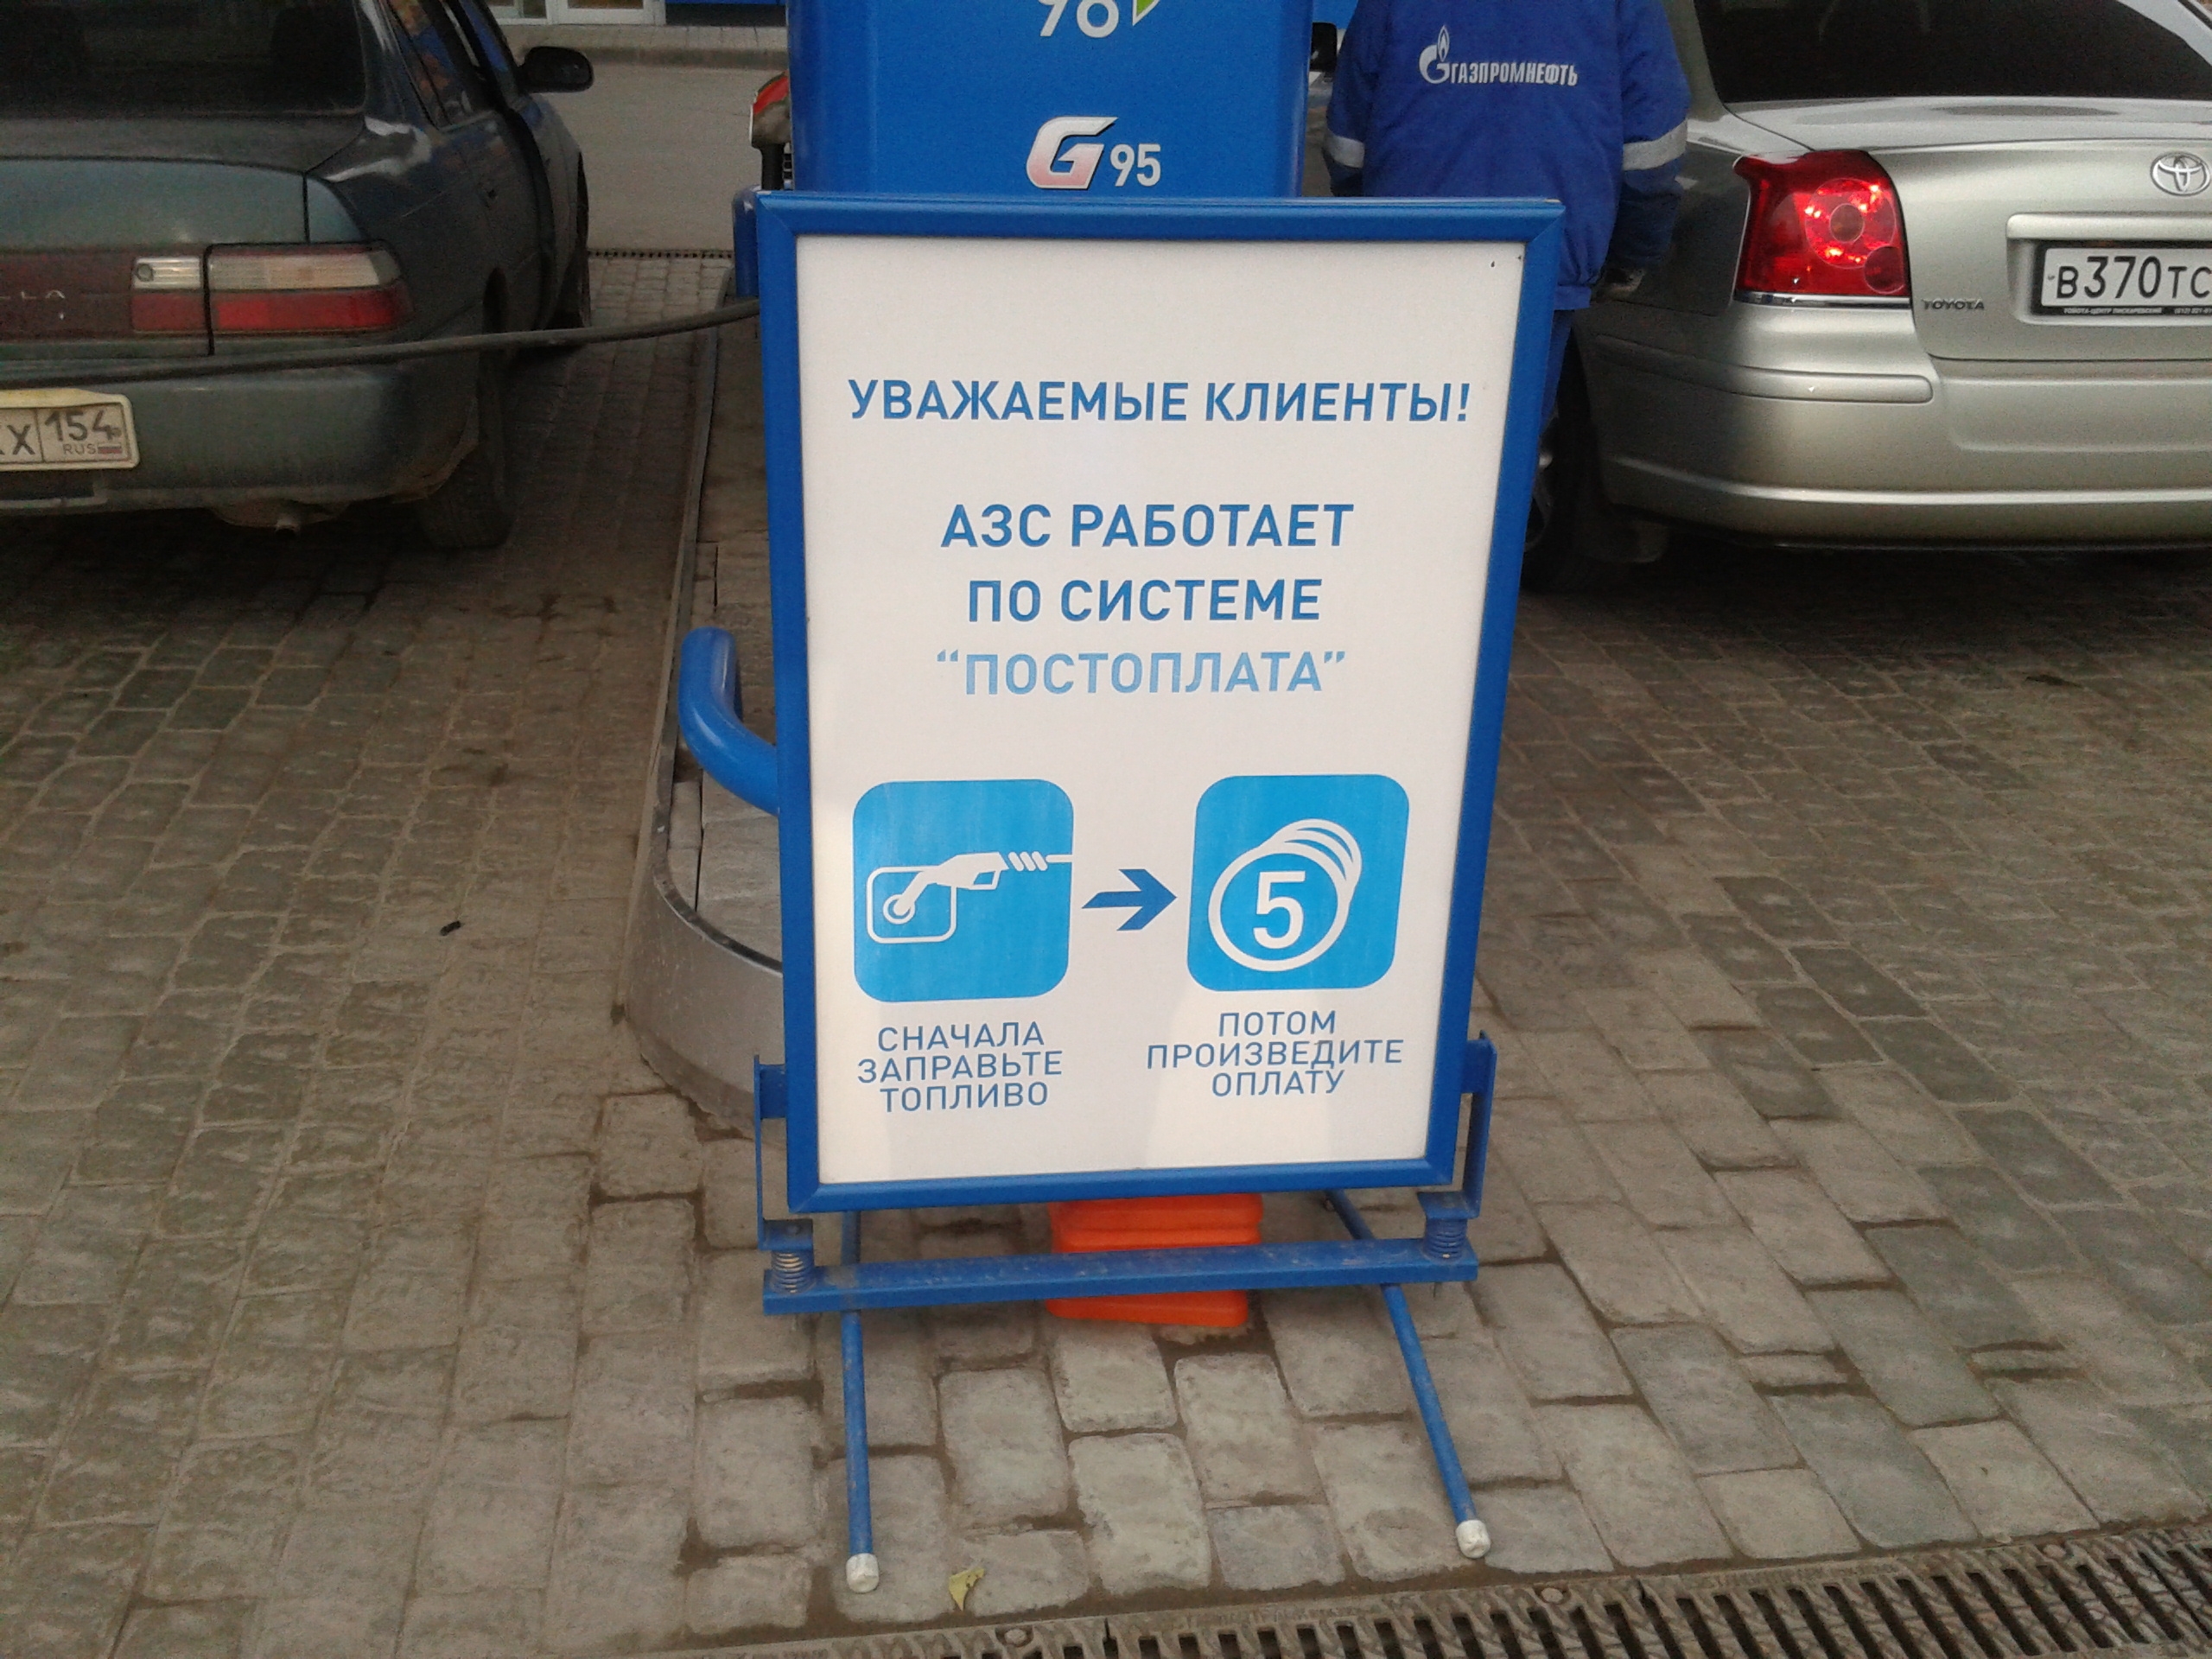 Постоплата товара. Постоплата на АЗС. Постоплата на АЗС Газпромнефть. Ящик для песка на АЗС Газпромнефть. Постоплата работ.